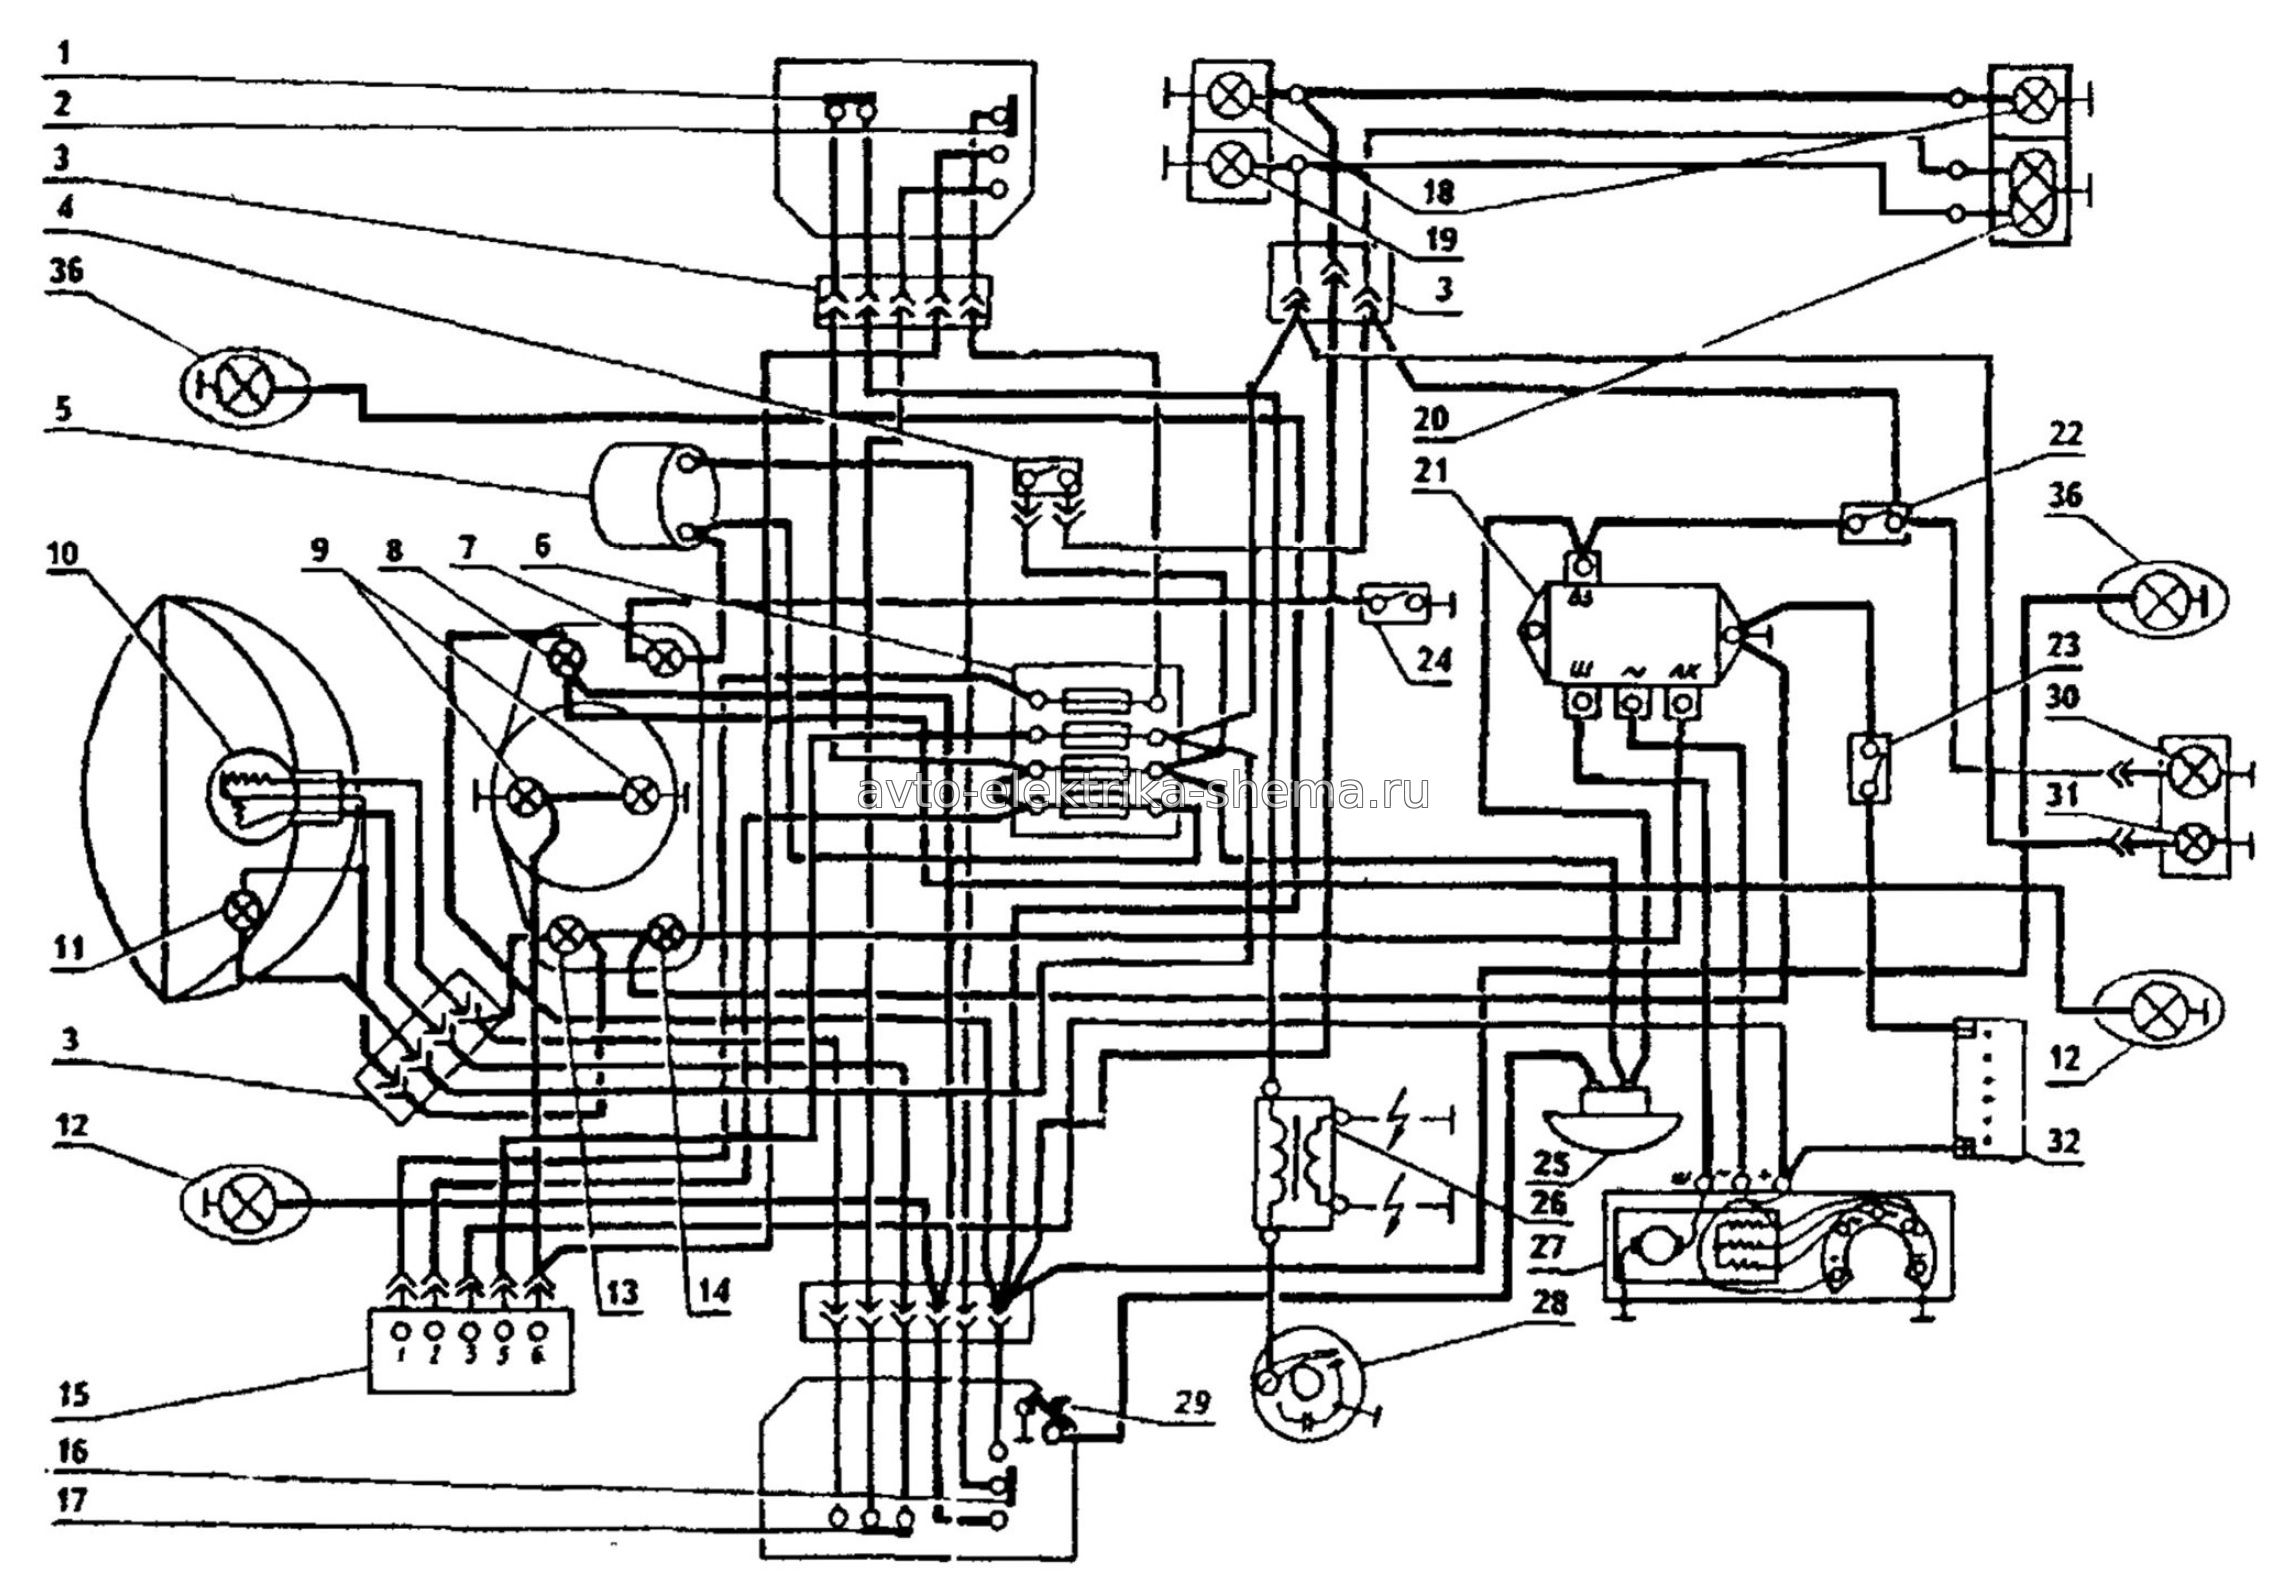 Схема электрооборудования мотоциклов Урал ИМЗ-3.103-10; ИМЗ-8.103-30; ИМЗ-8.103-40 и ИМЗ-8.123